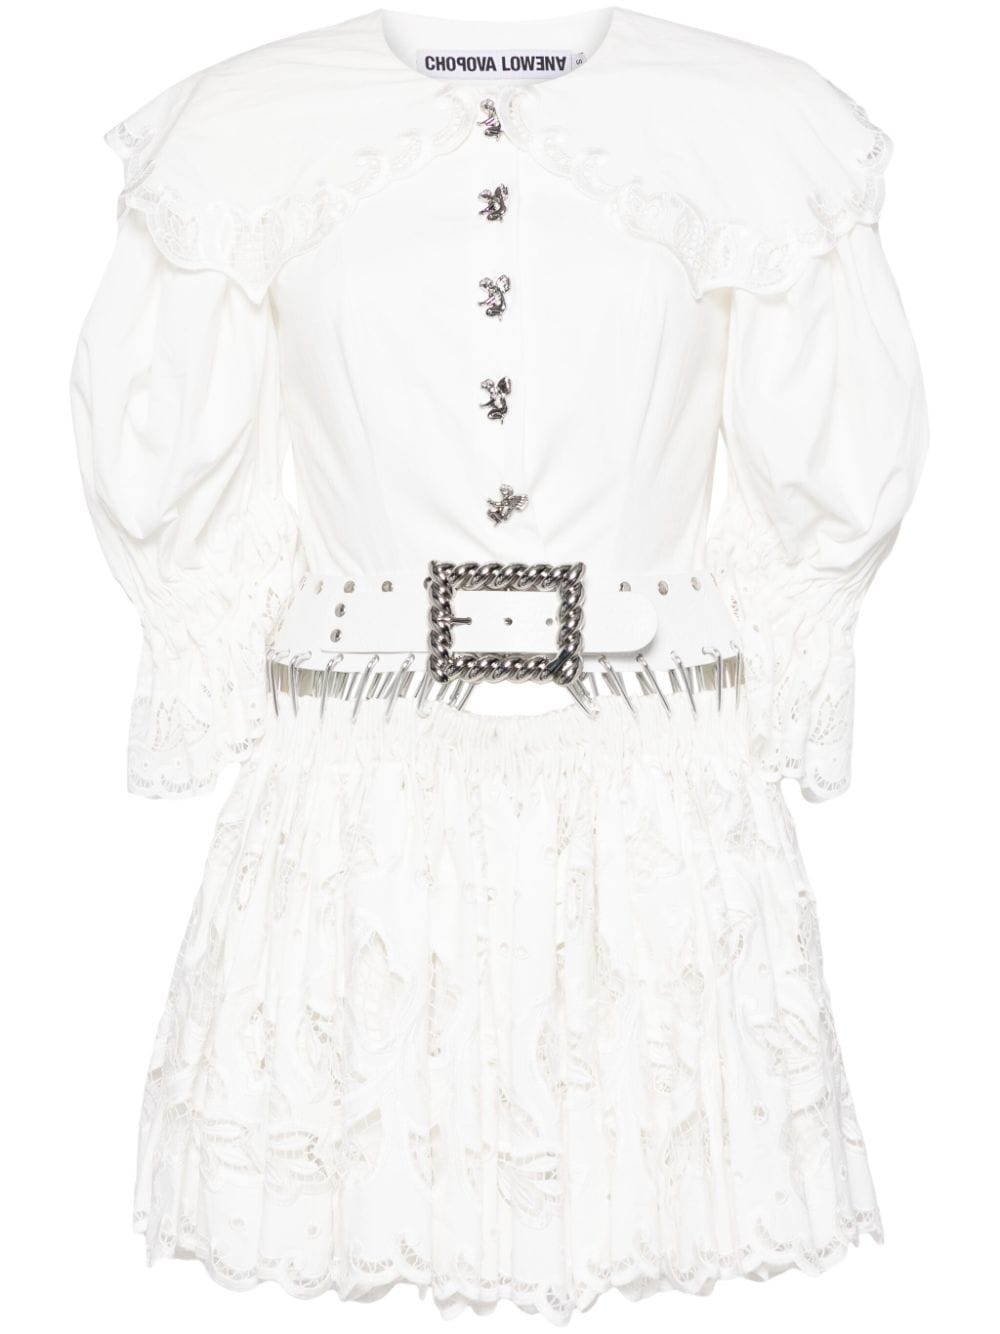 Chopova Lowena Midday Carabiner Kleid - Weiß von Chopova Lowena